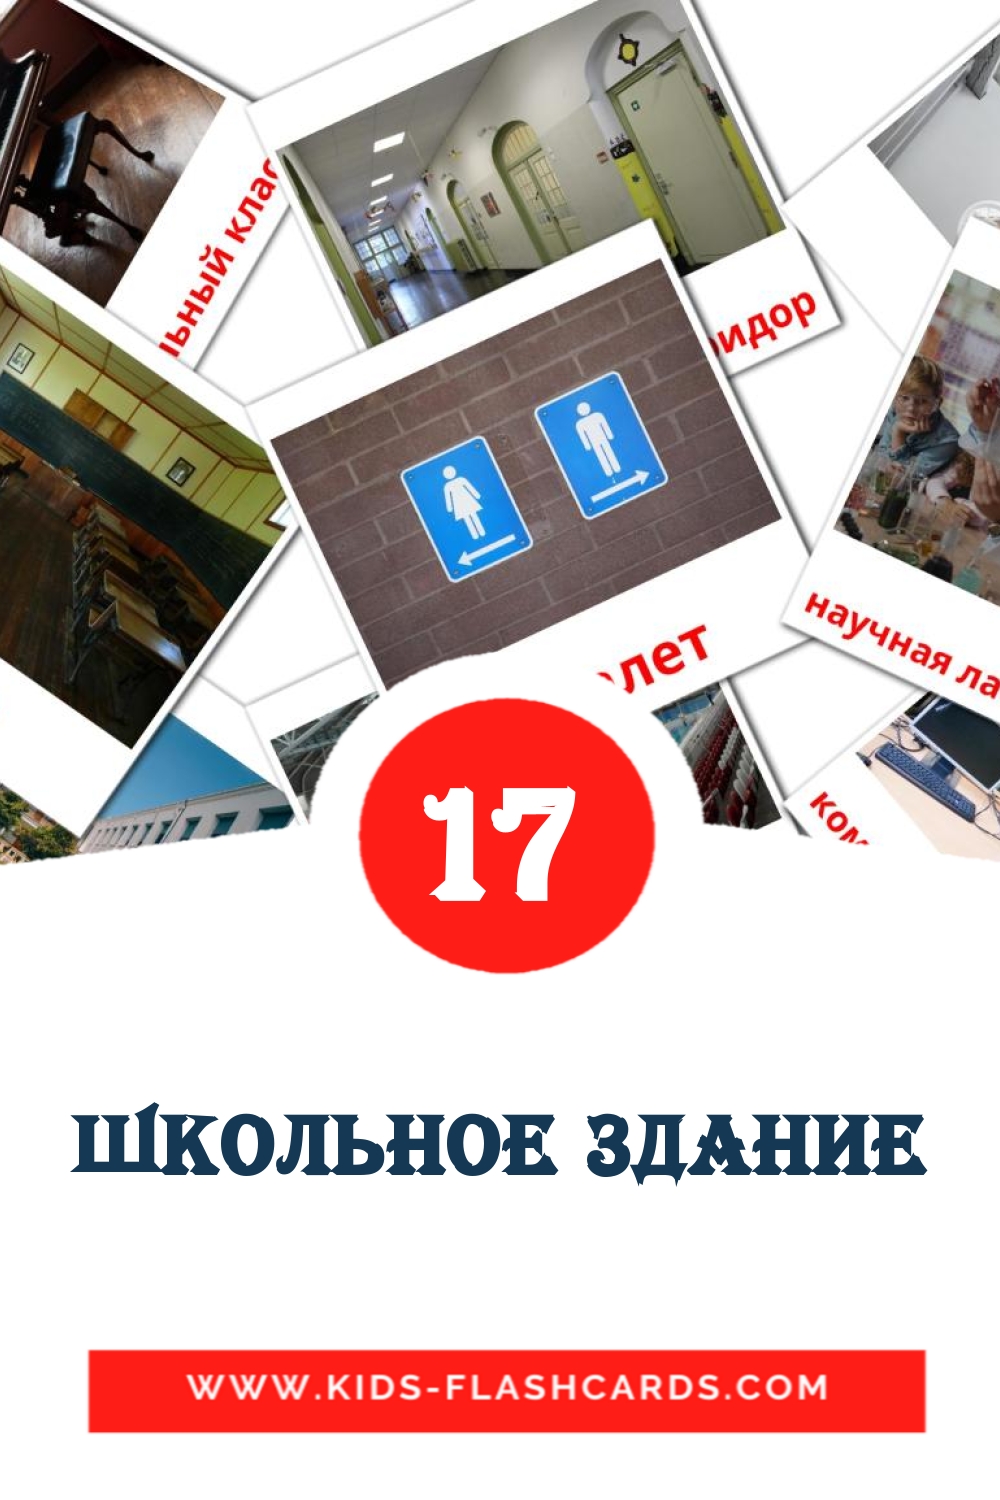 Школьное здание на русском для Детского Сада (17 карточек)